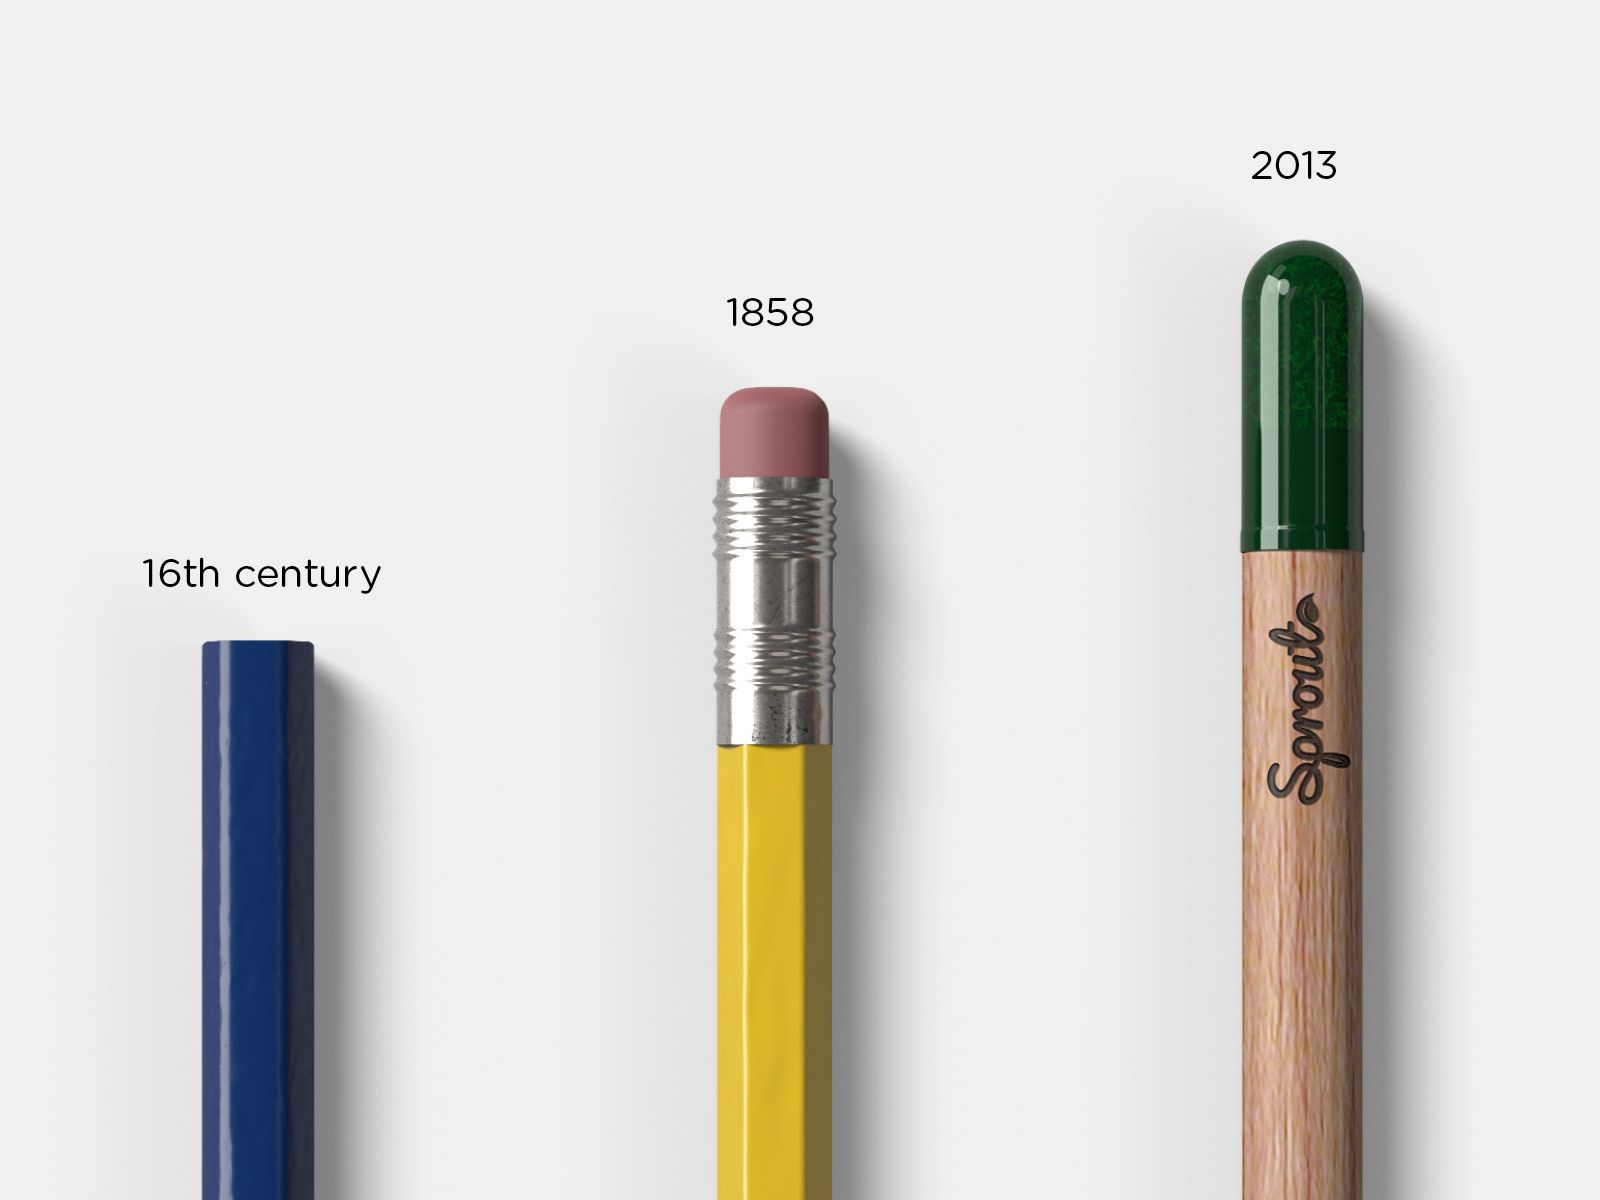 El lápiz cumplió 456 años, más innovador que nunca y Sprout World lo celebró